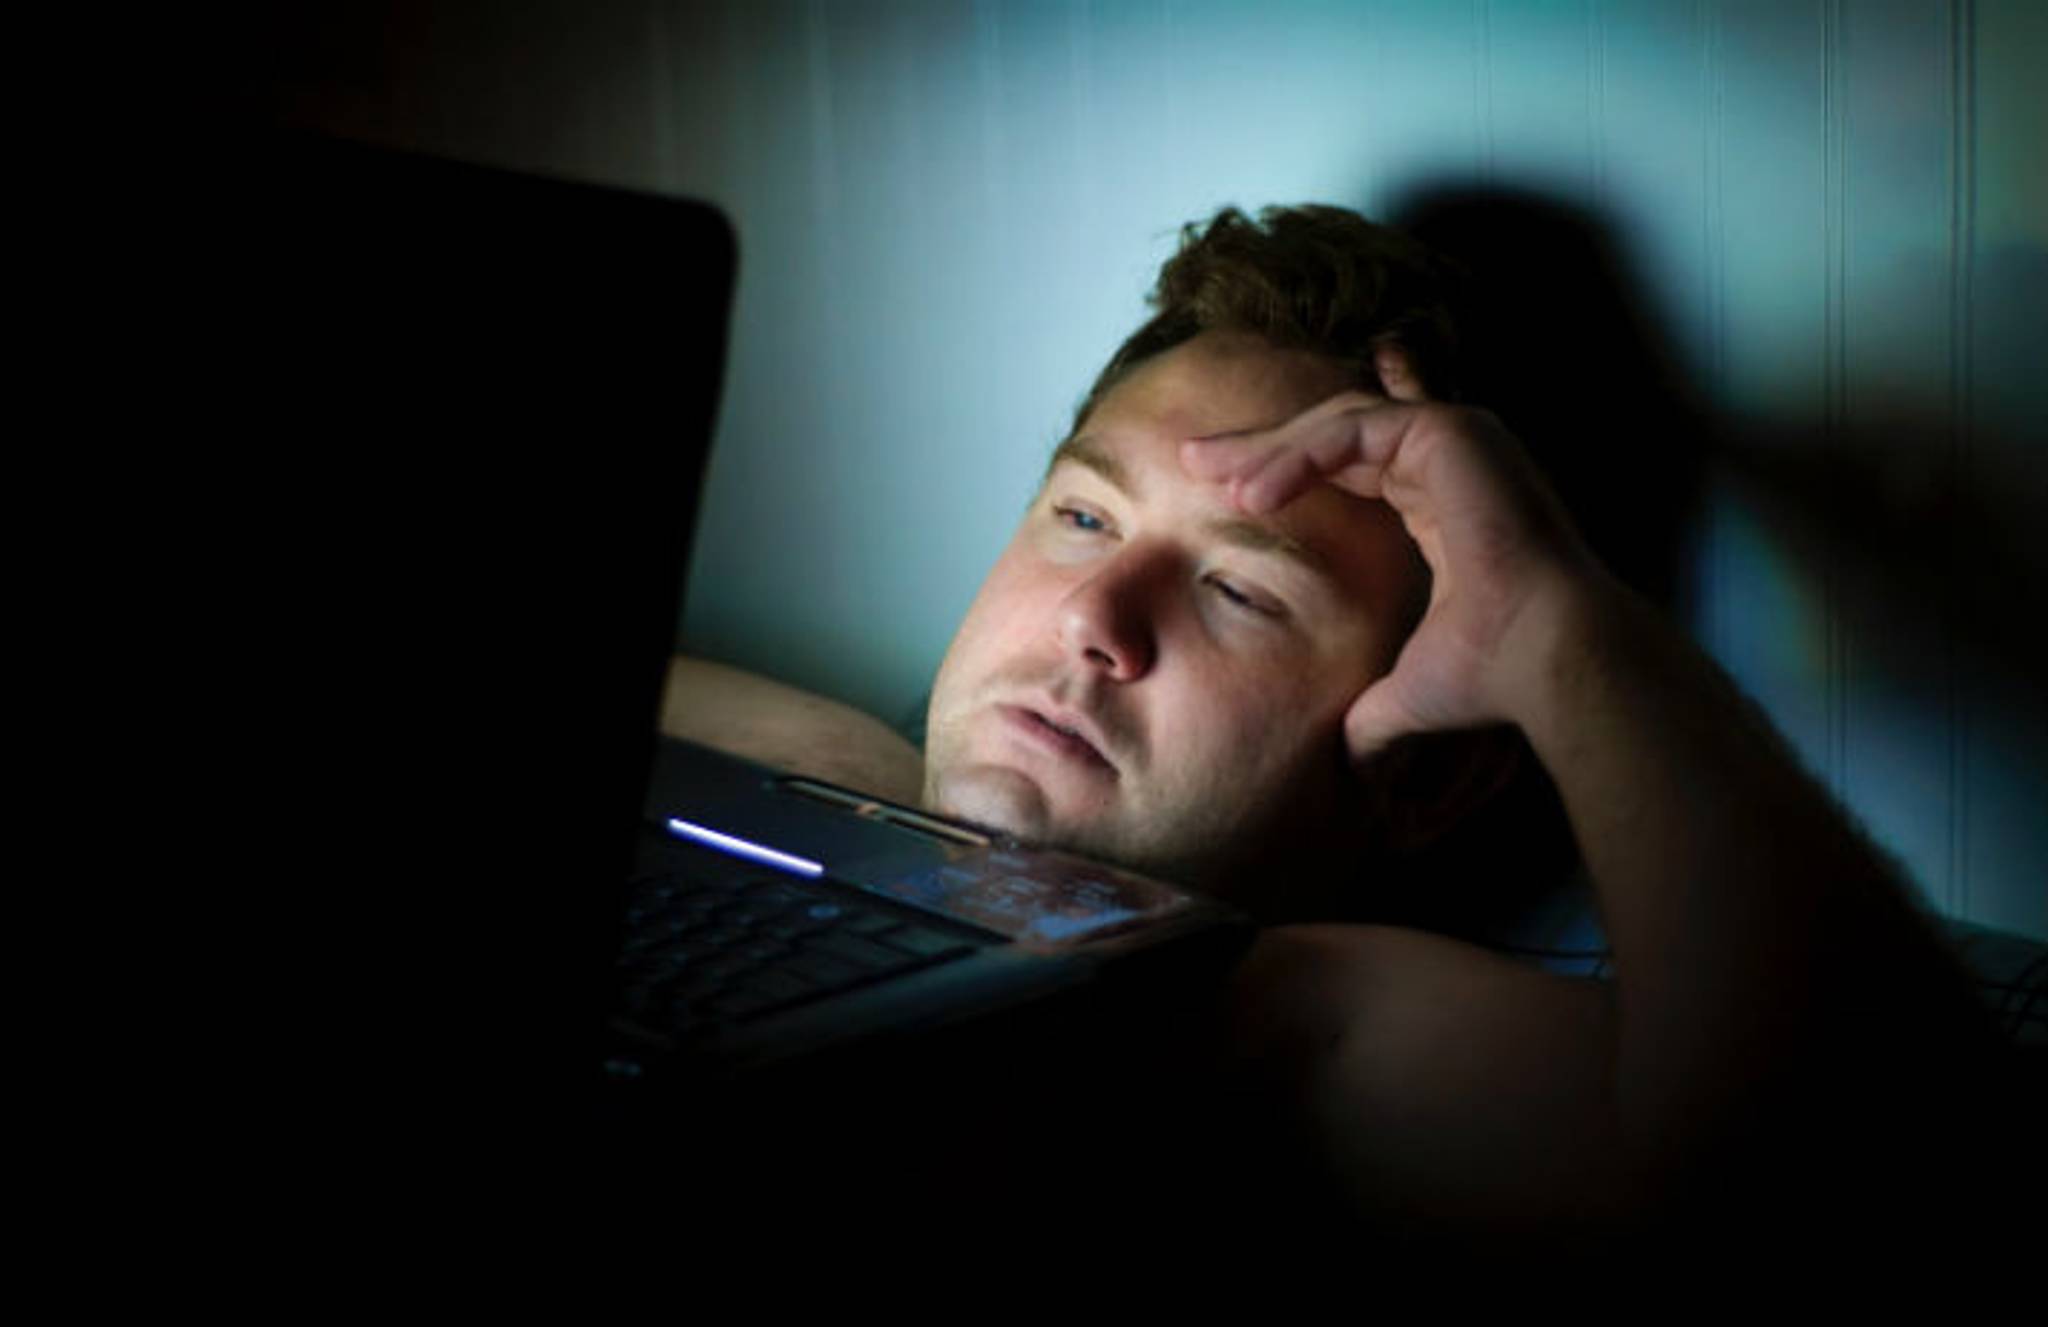 Most Americans lose sleep due to binge-watching